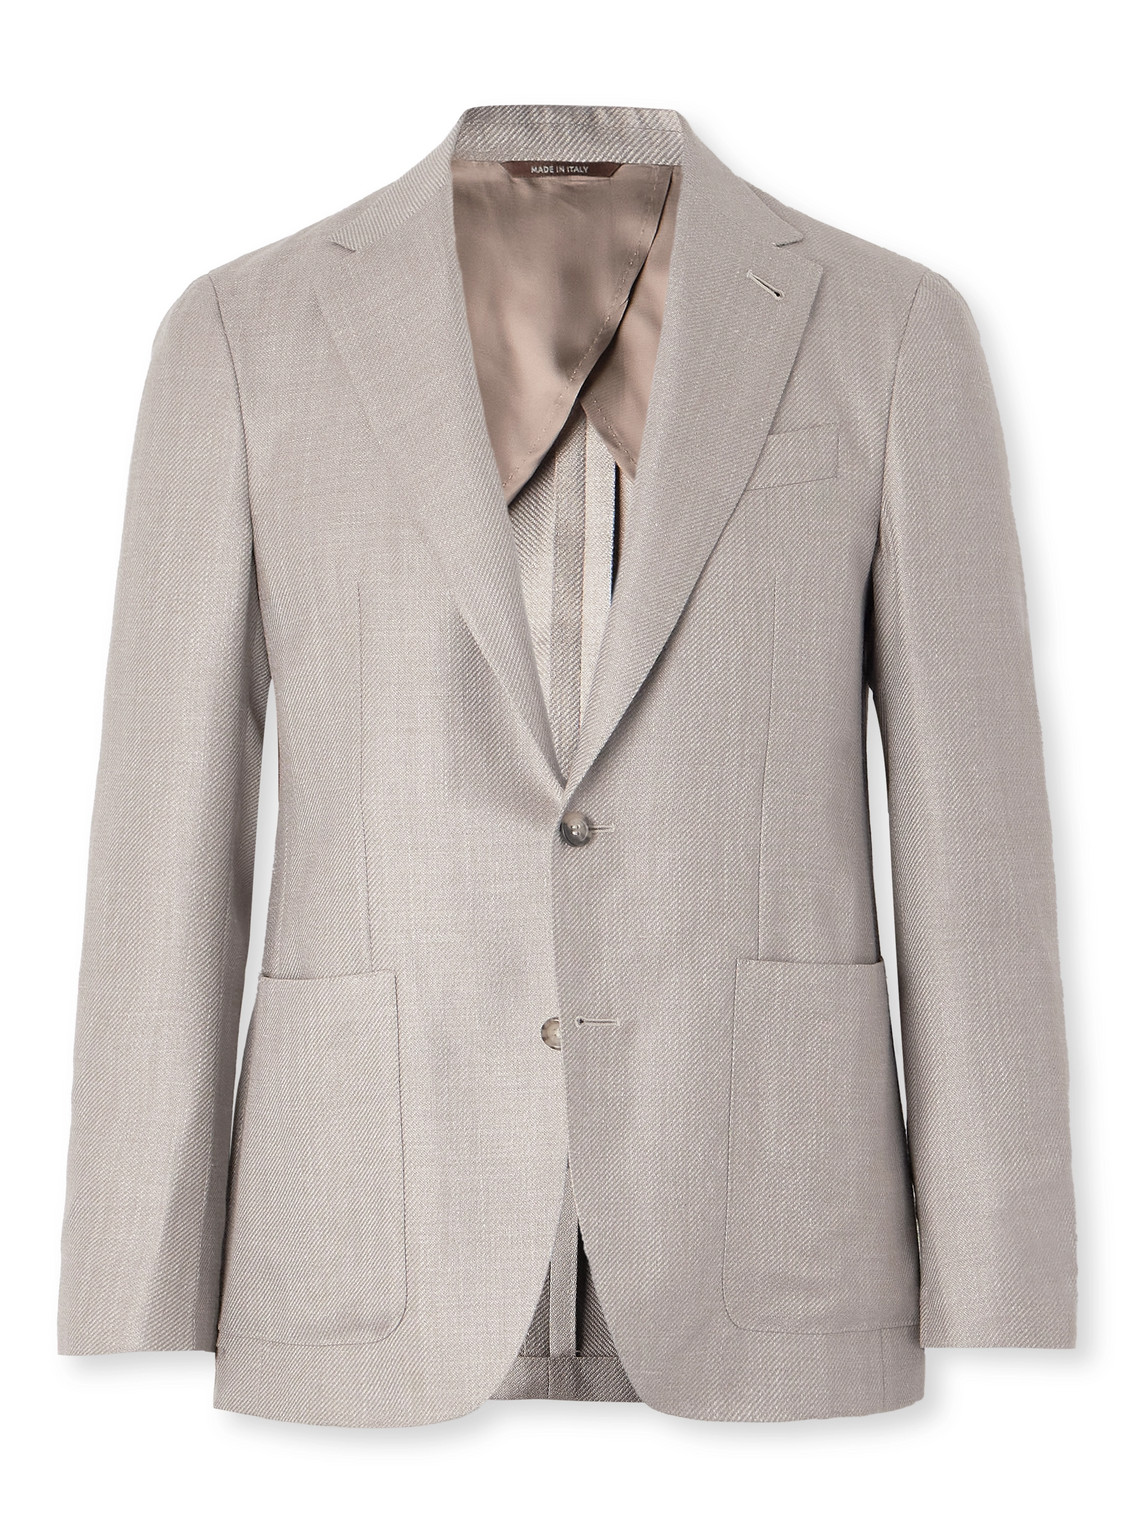 Canali - Wool, Silk and Linen-Blend Twill Blazer - Men - Neutrals - IT 48 von Canali